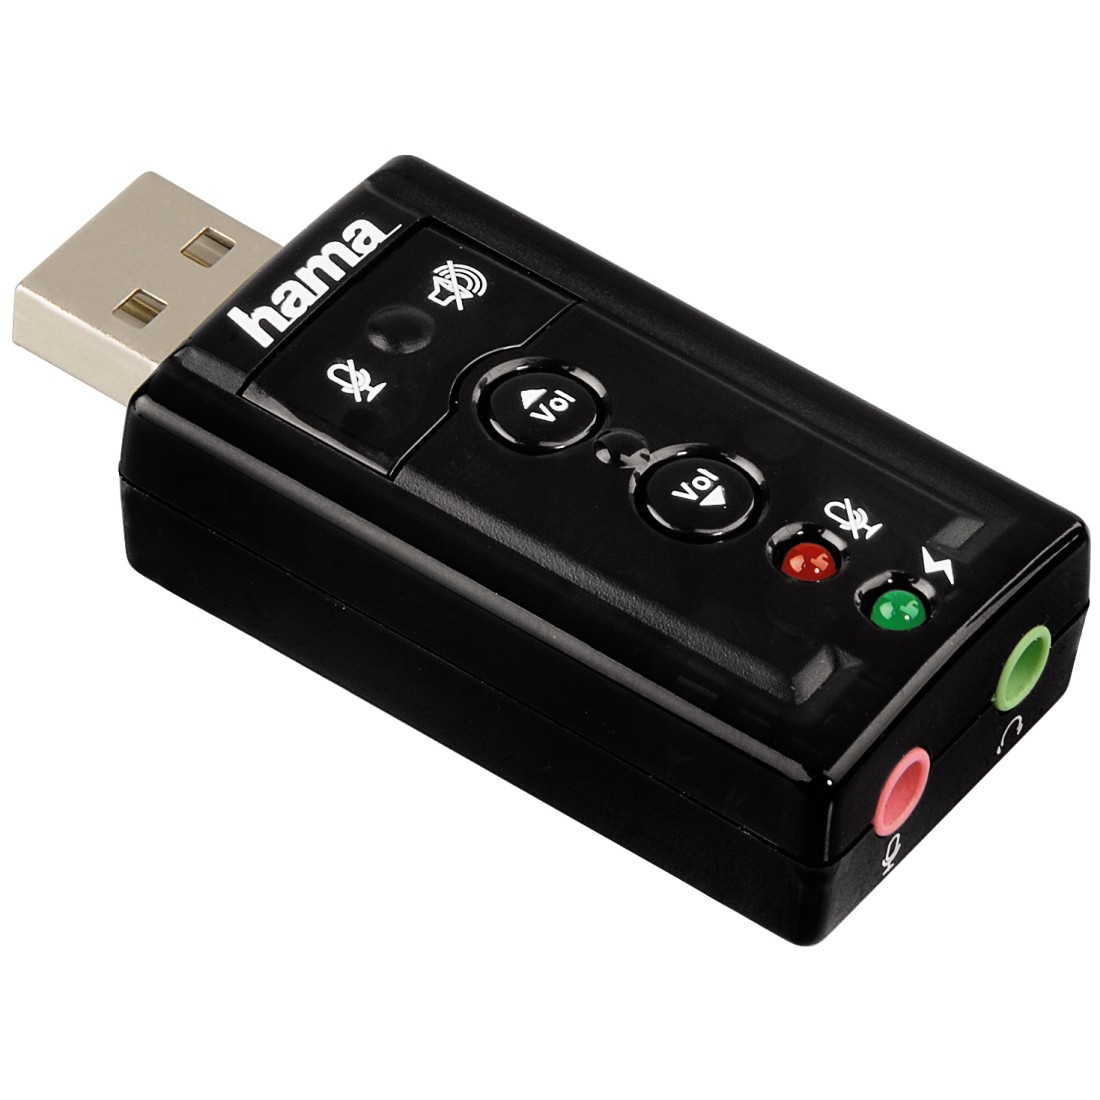 Купить usb 7. Hama h-51620. Звуковая карта Hama 51620. USB аудиокарта cm-108. Звуковая карта USB traa71 (c-Media cm108) 2.0 Ret.